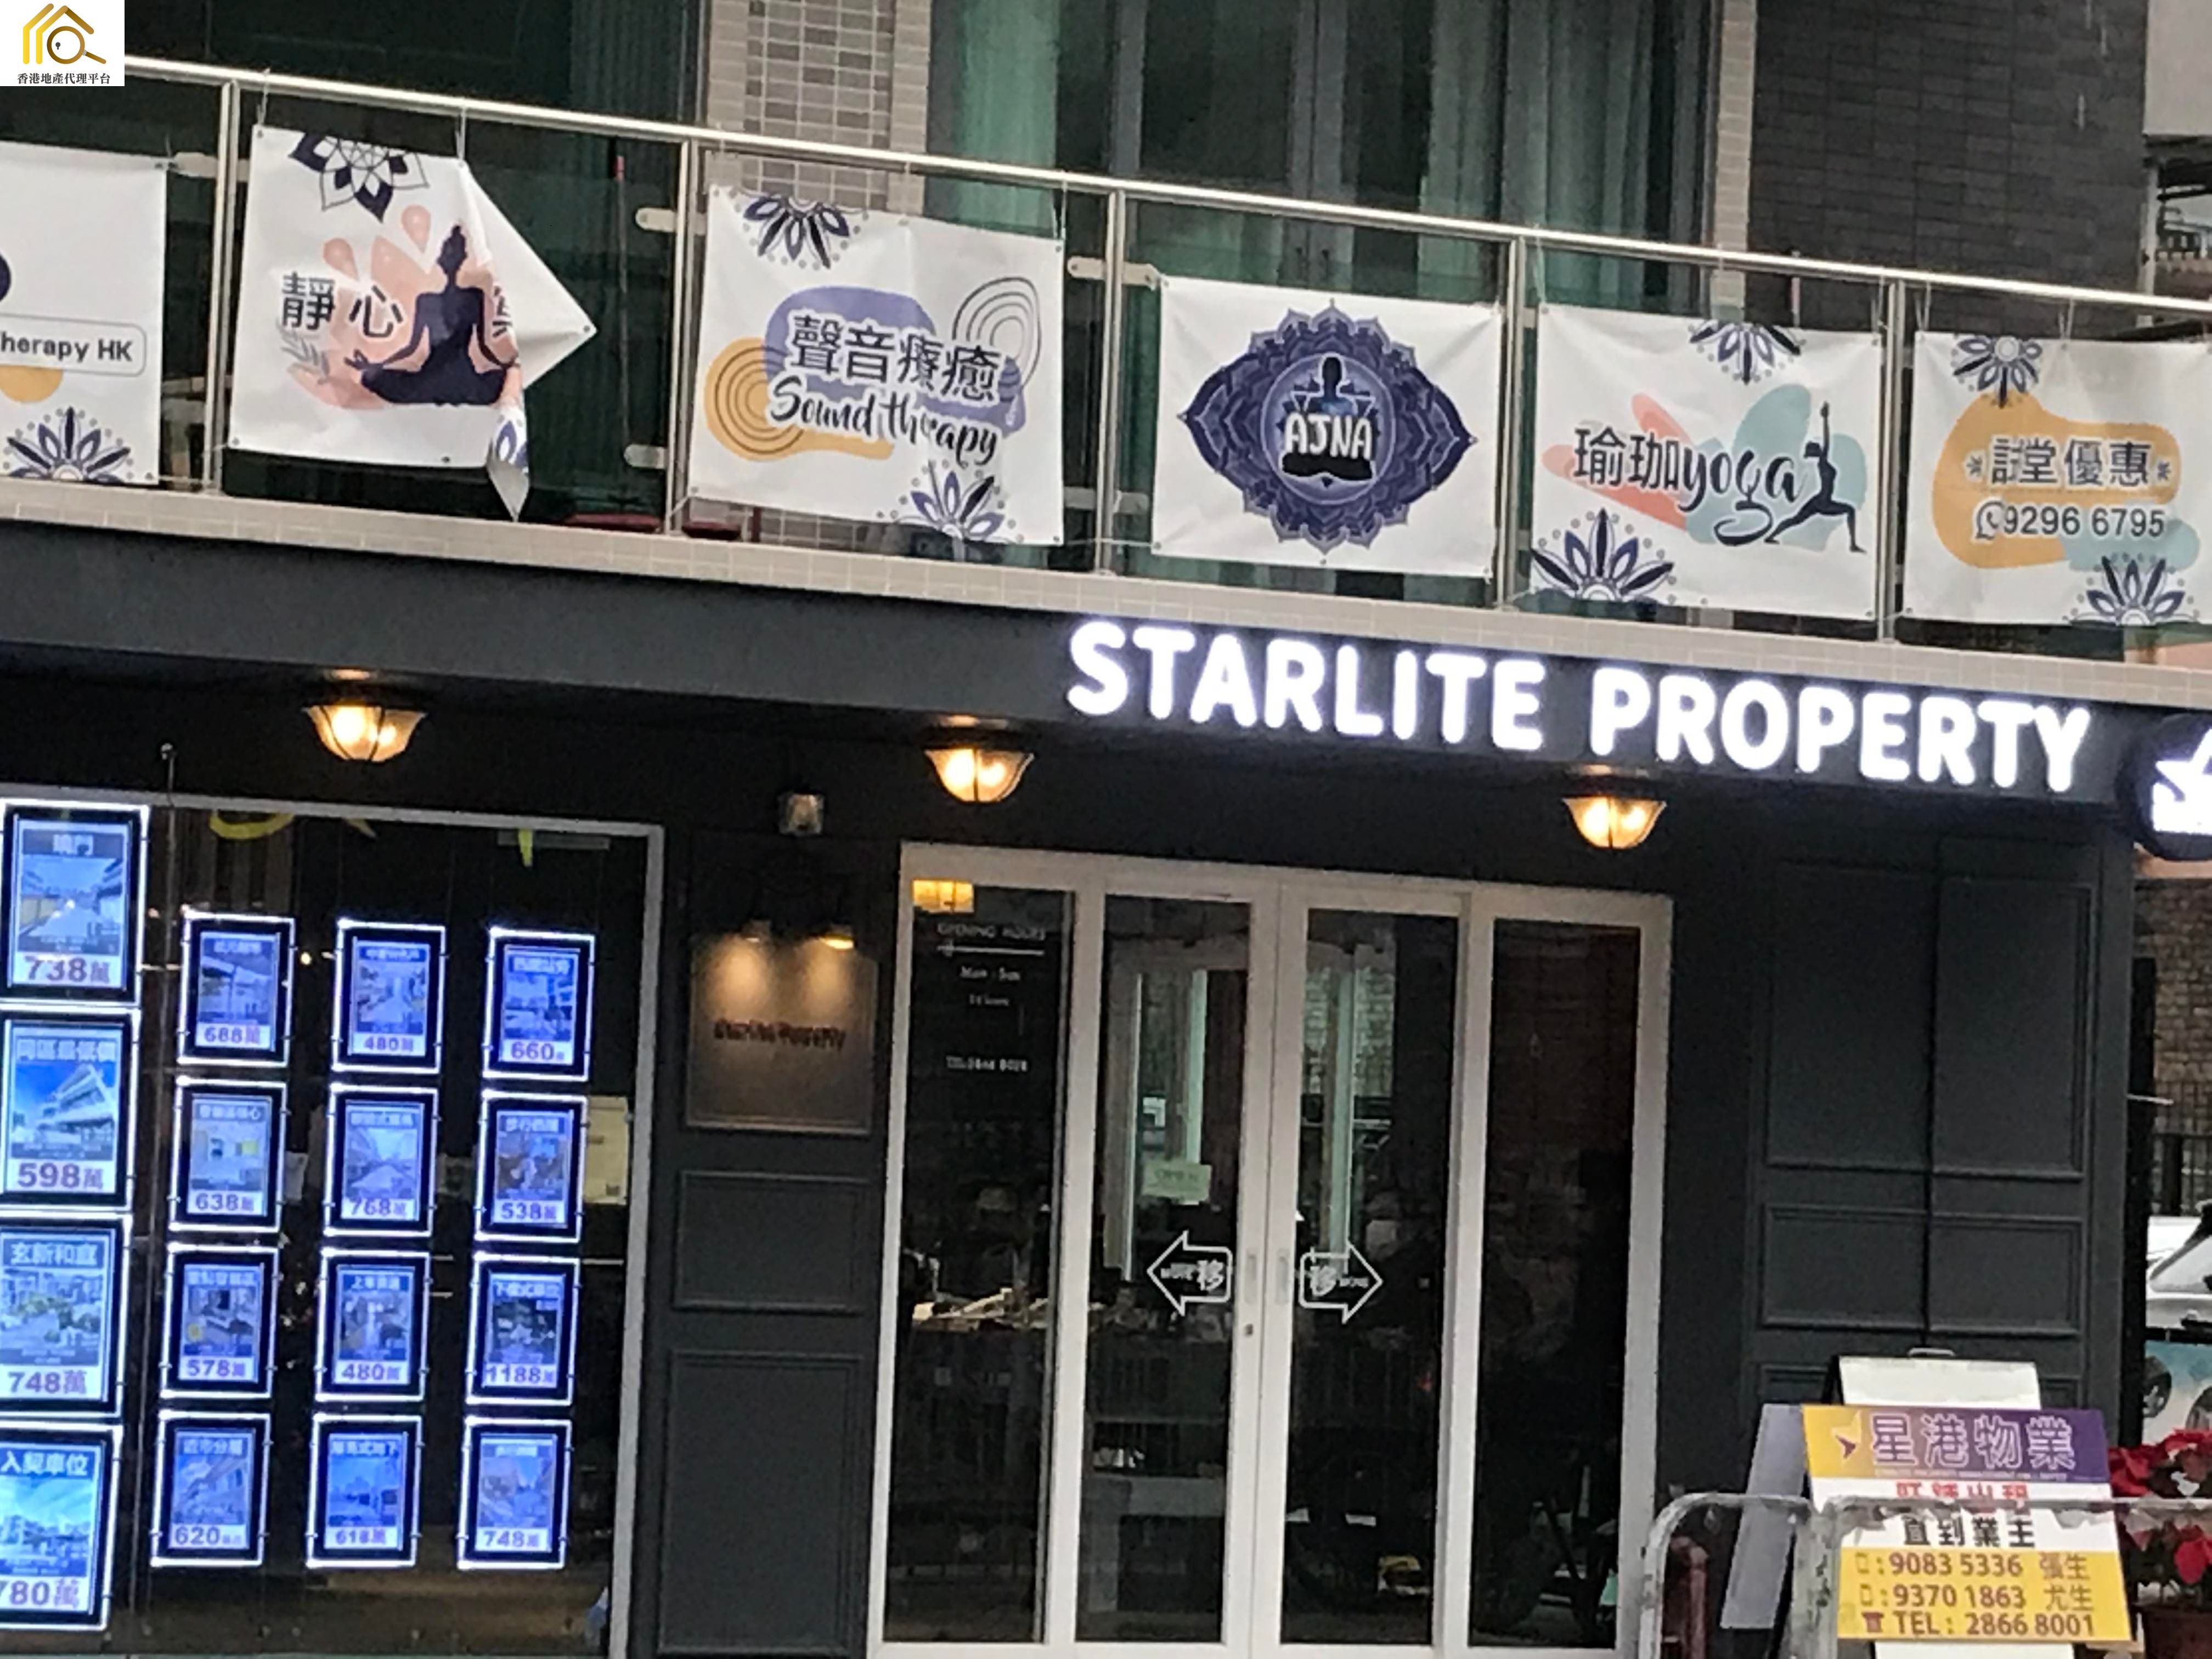 商舖地產代理: 星港物業 Starlite Property